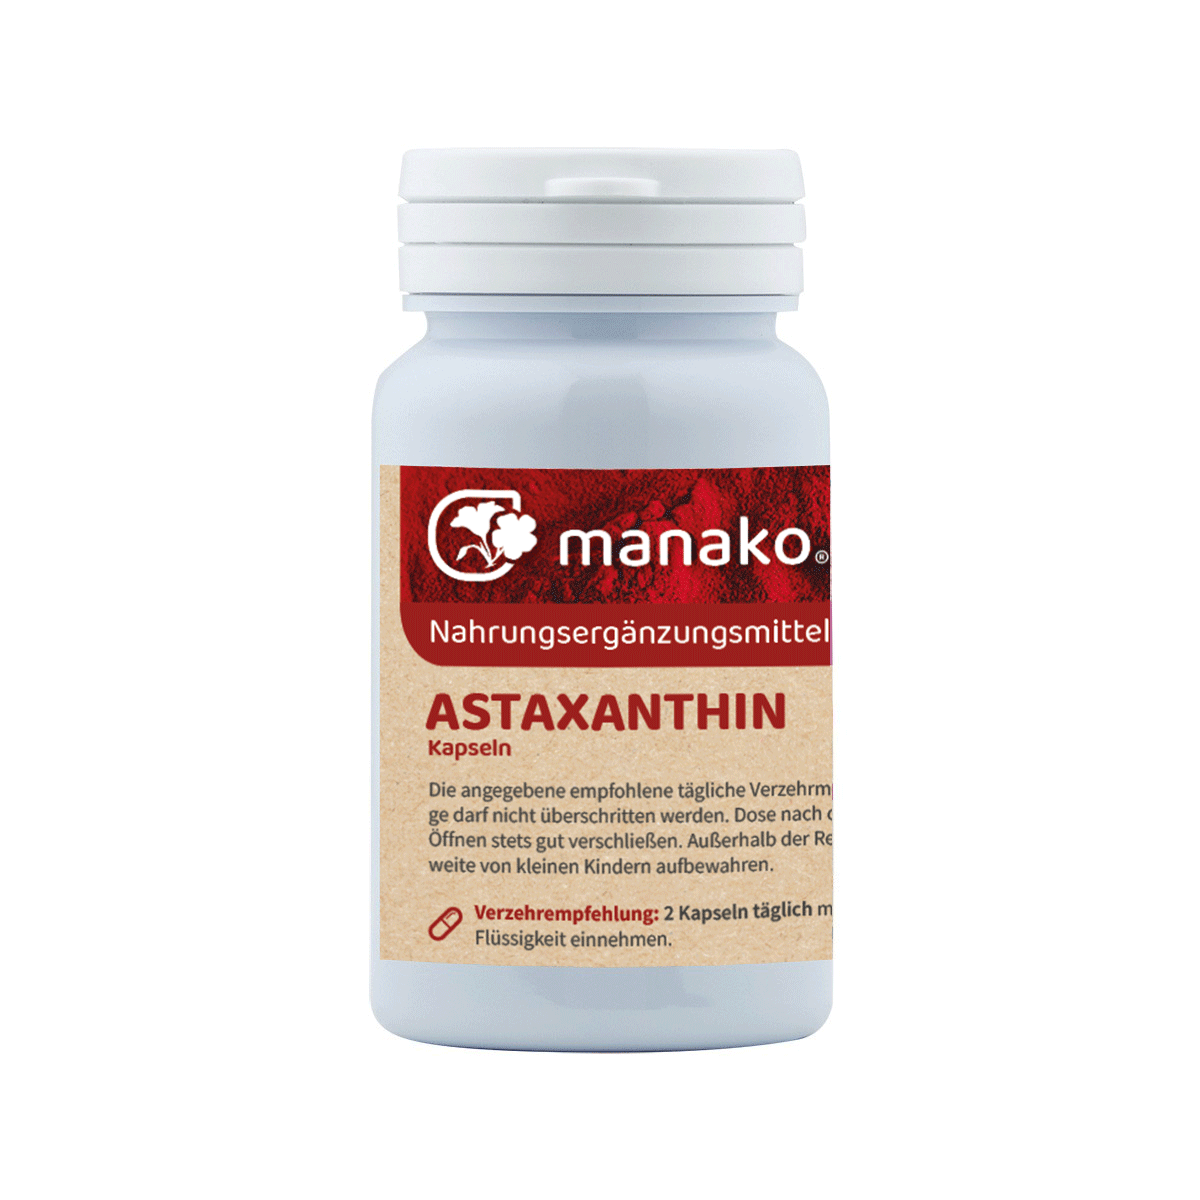 manako Astaxanthin vegetarische Kapseln, 90 Stück, Dose a 22g